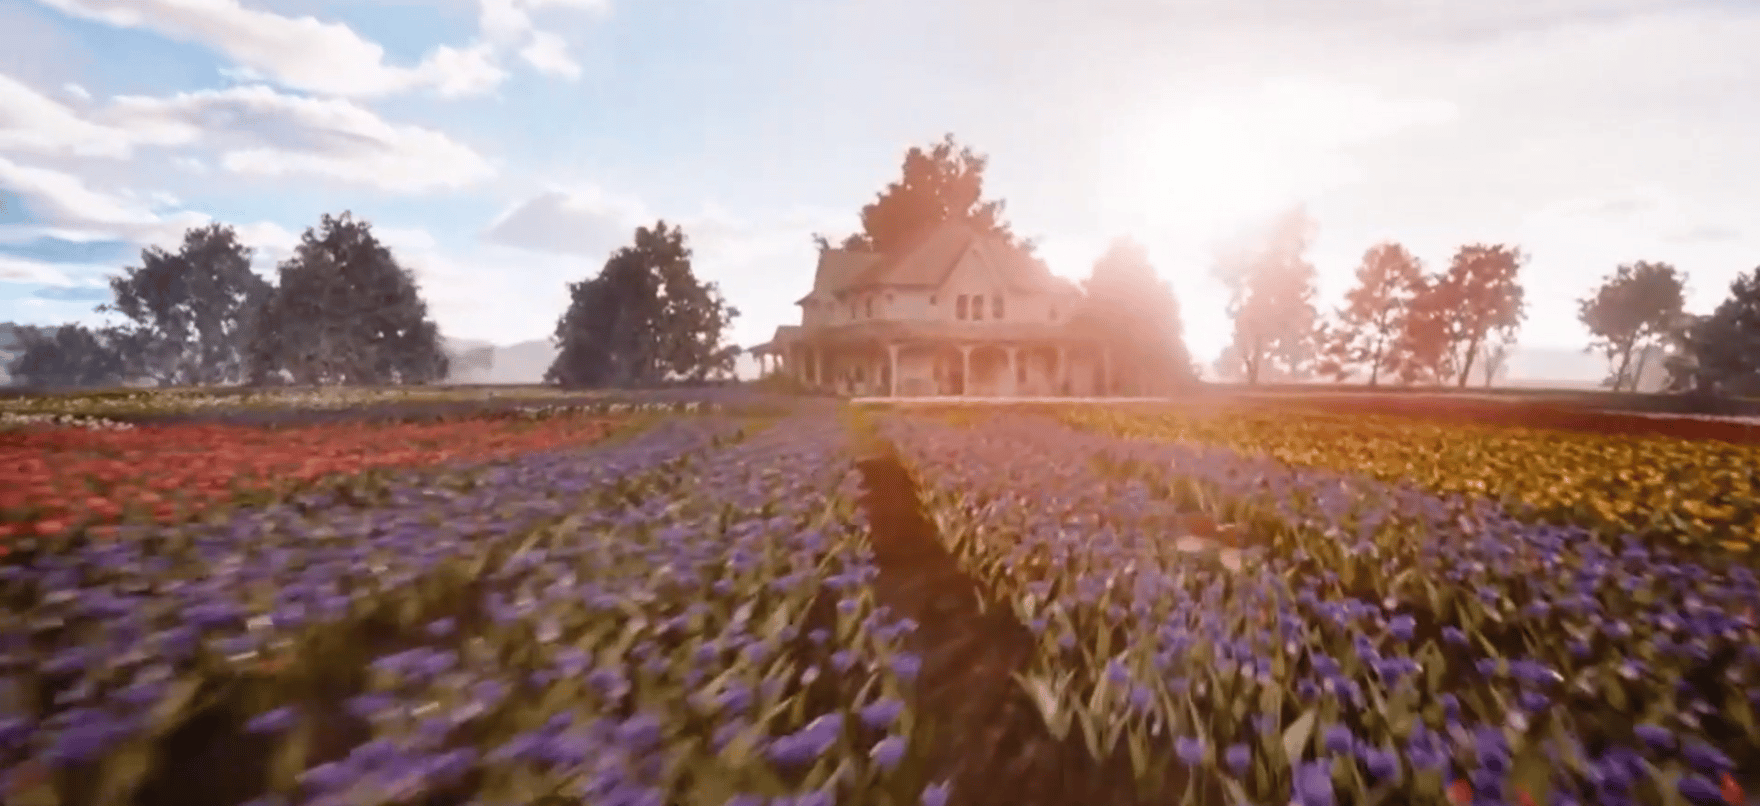 An Easter Bloom - farmhouse and flowers (c) Hallmark